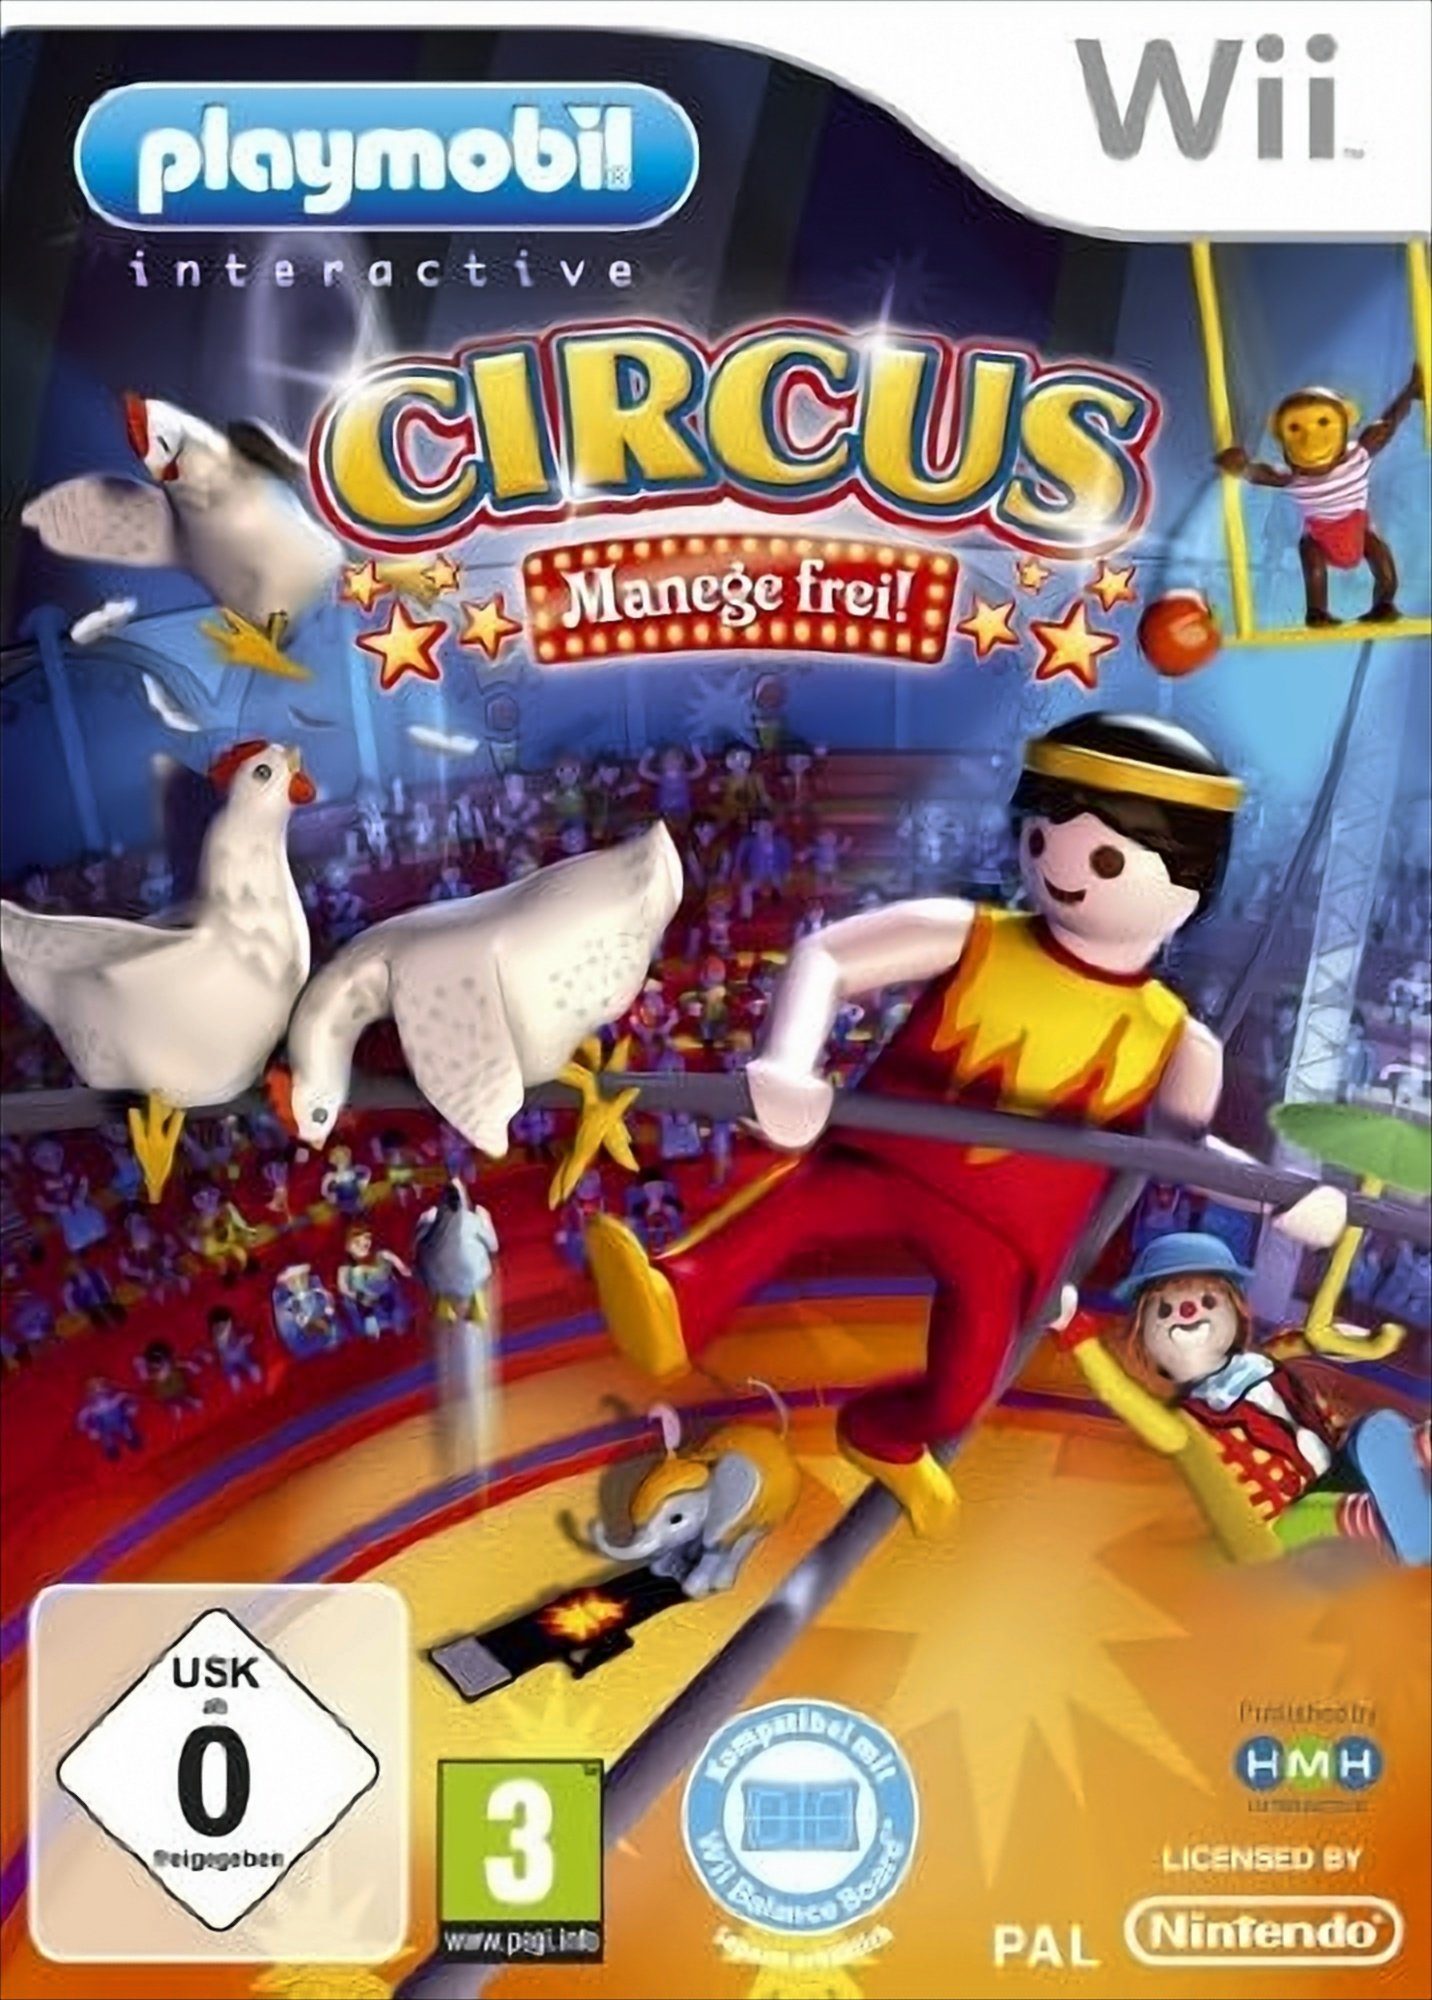 Playmobil - Circus Nintendo Wii